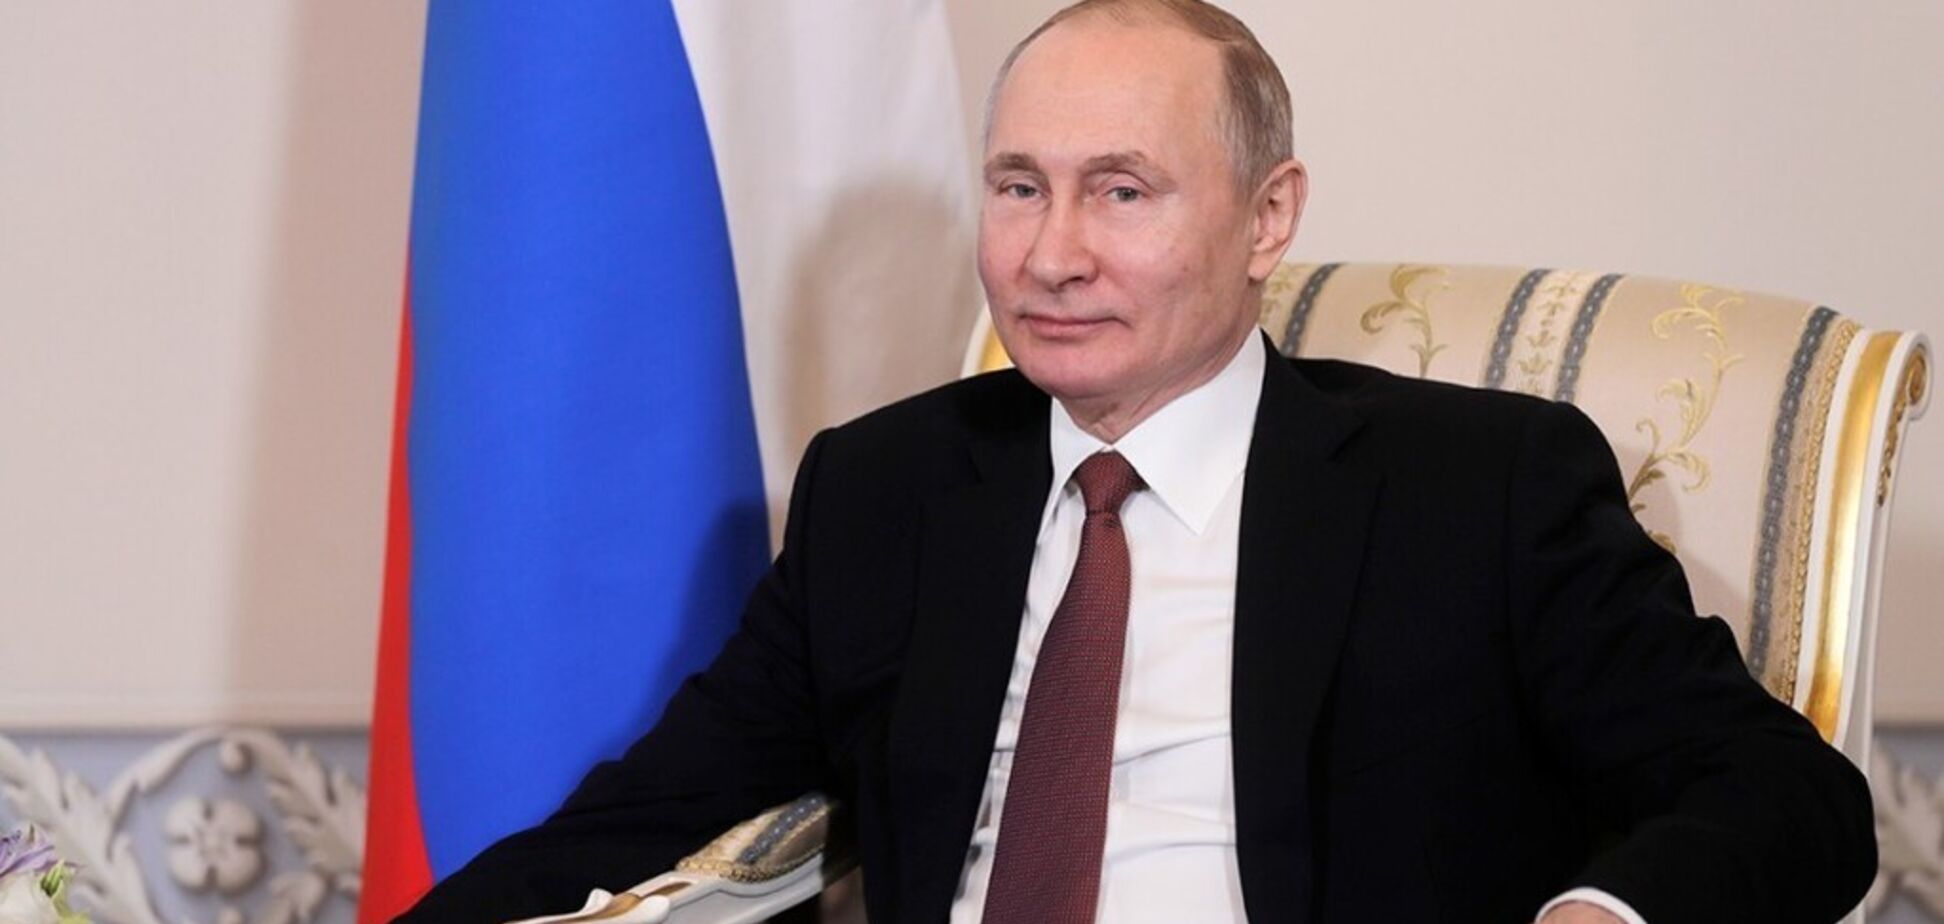 'Семья' наехала на Путина? Появилось объяснение резкому изменению курса Кремля